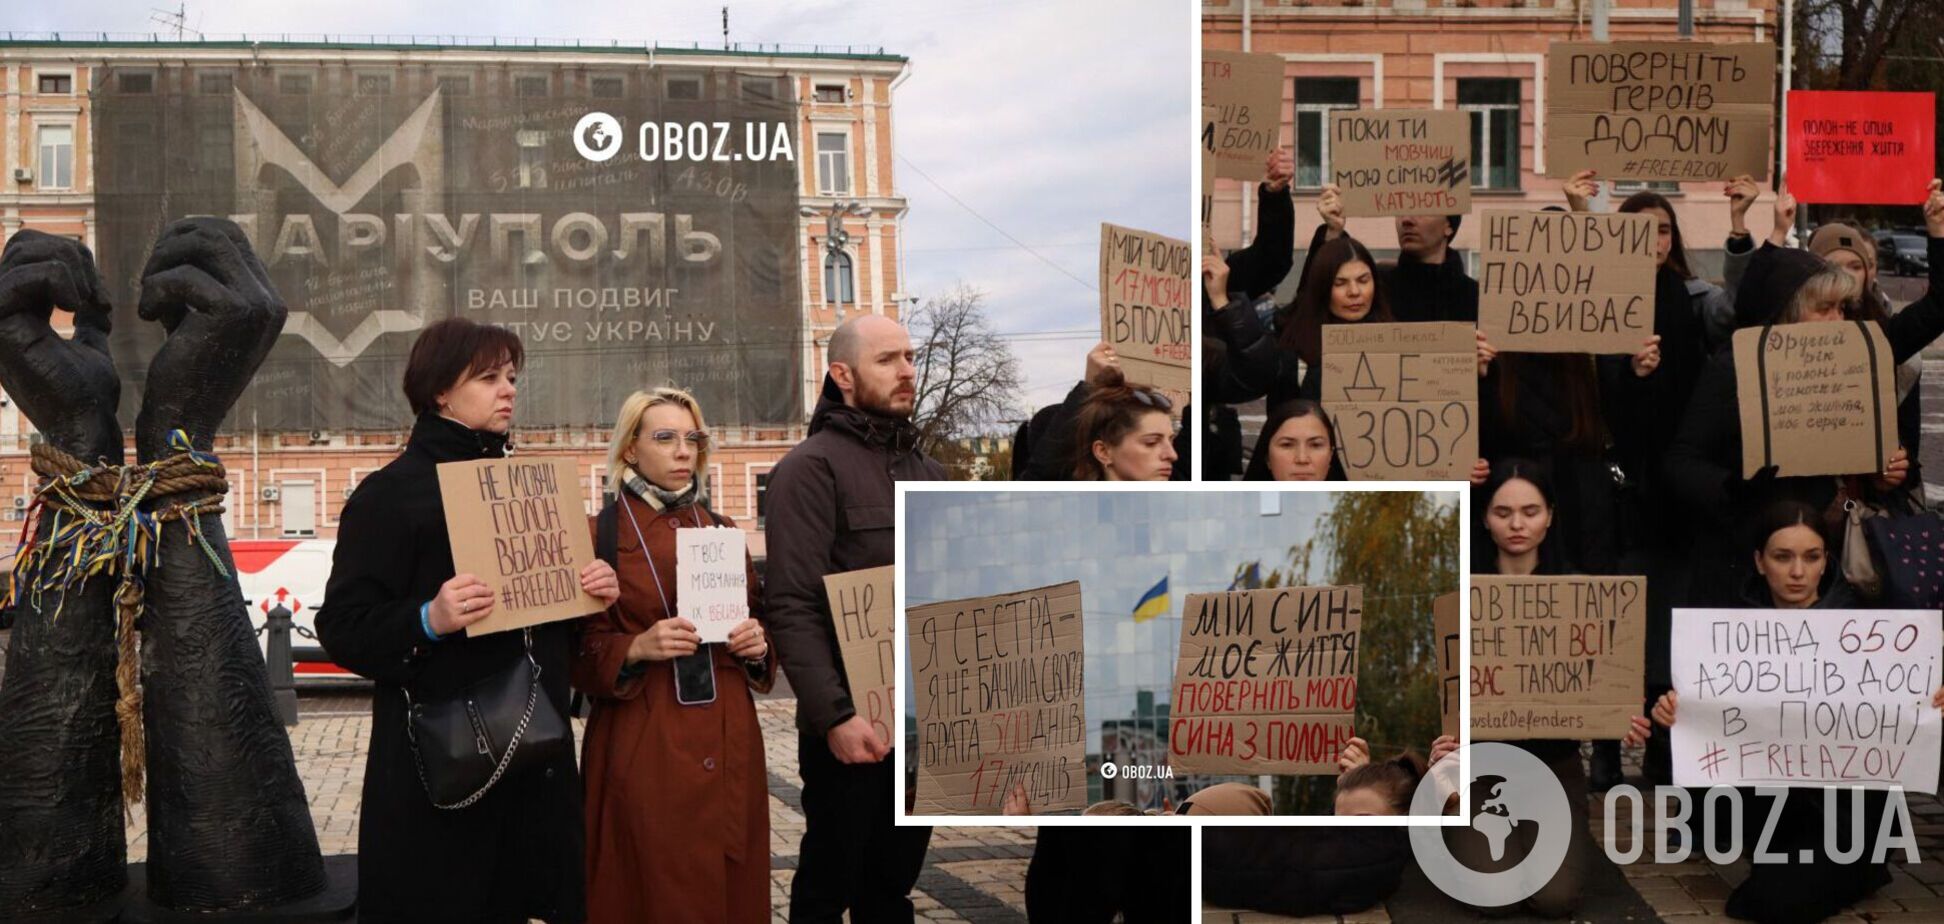 'Не мовчи': у Києві родичі захисників 'Азовсталі' влаштували акцію з нагадуванням про полонених. Фото